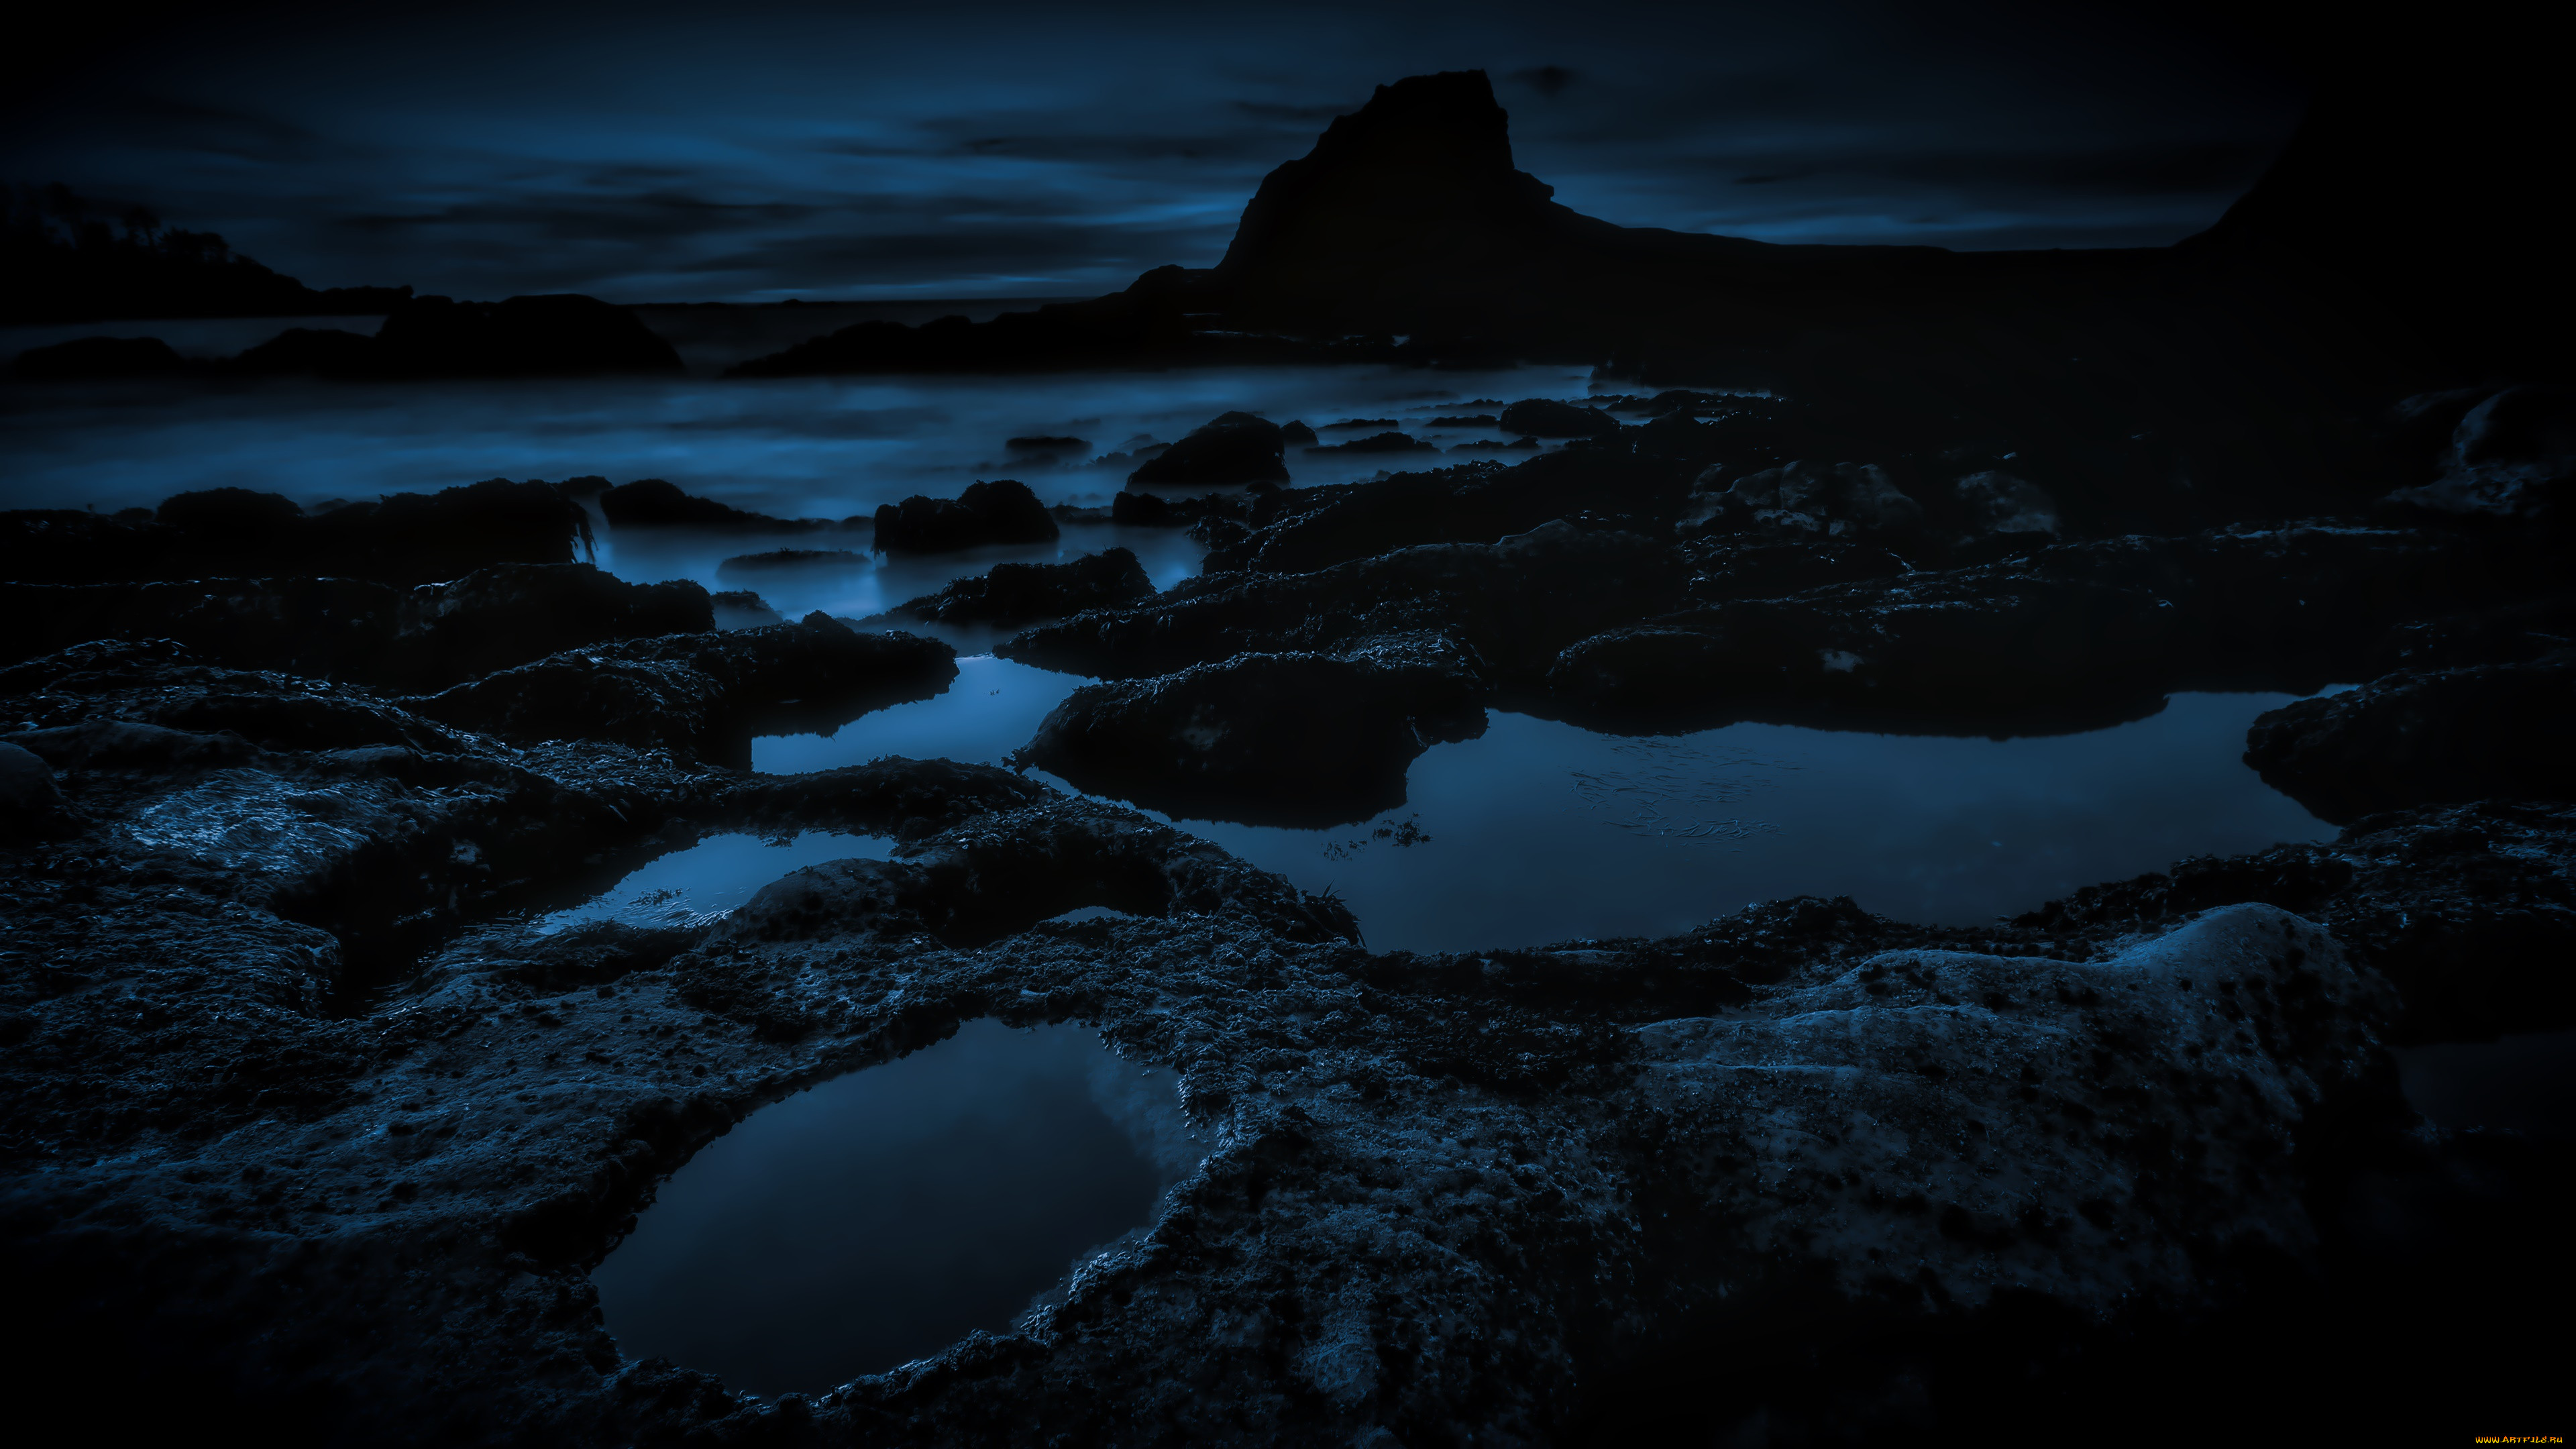 Night stone. Ночное море. Ночь в море. Ночь море камни. Каменный пляж ночью.